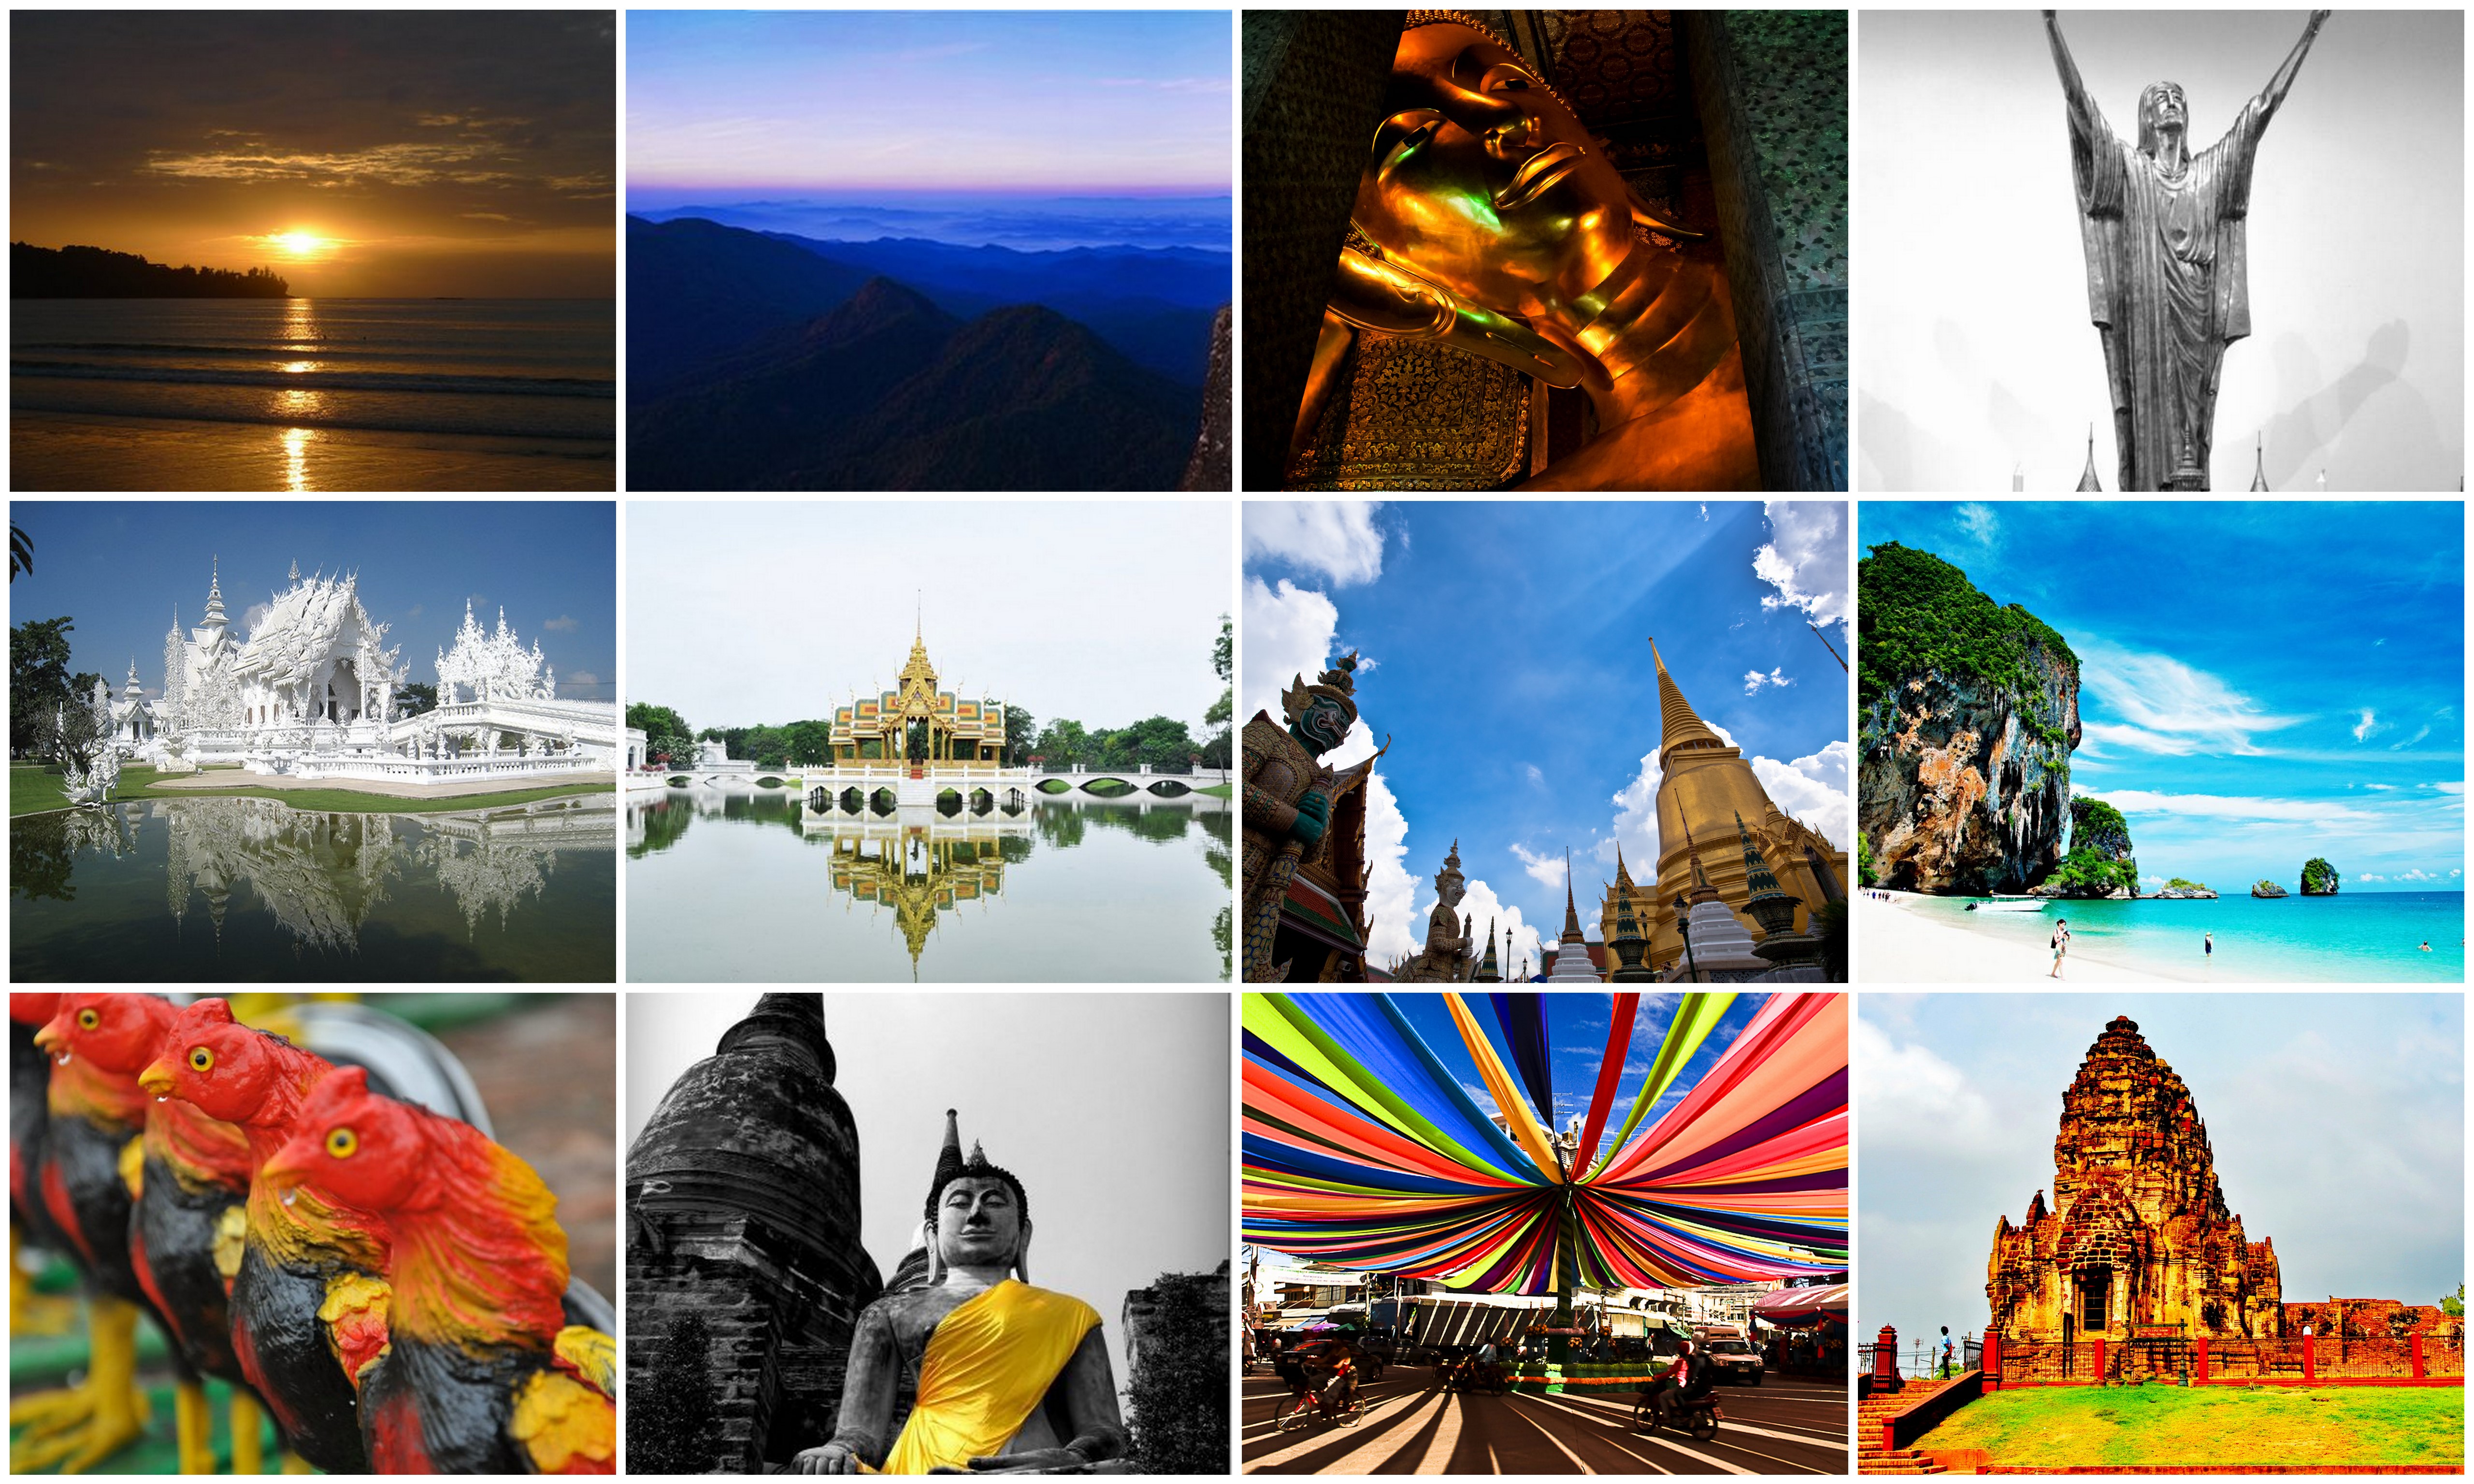 Amaze me Thailand Photo Contest - Grand Finalists